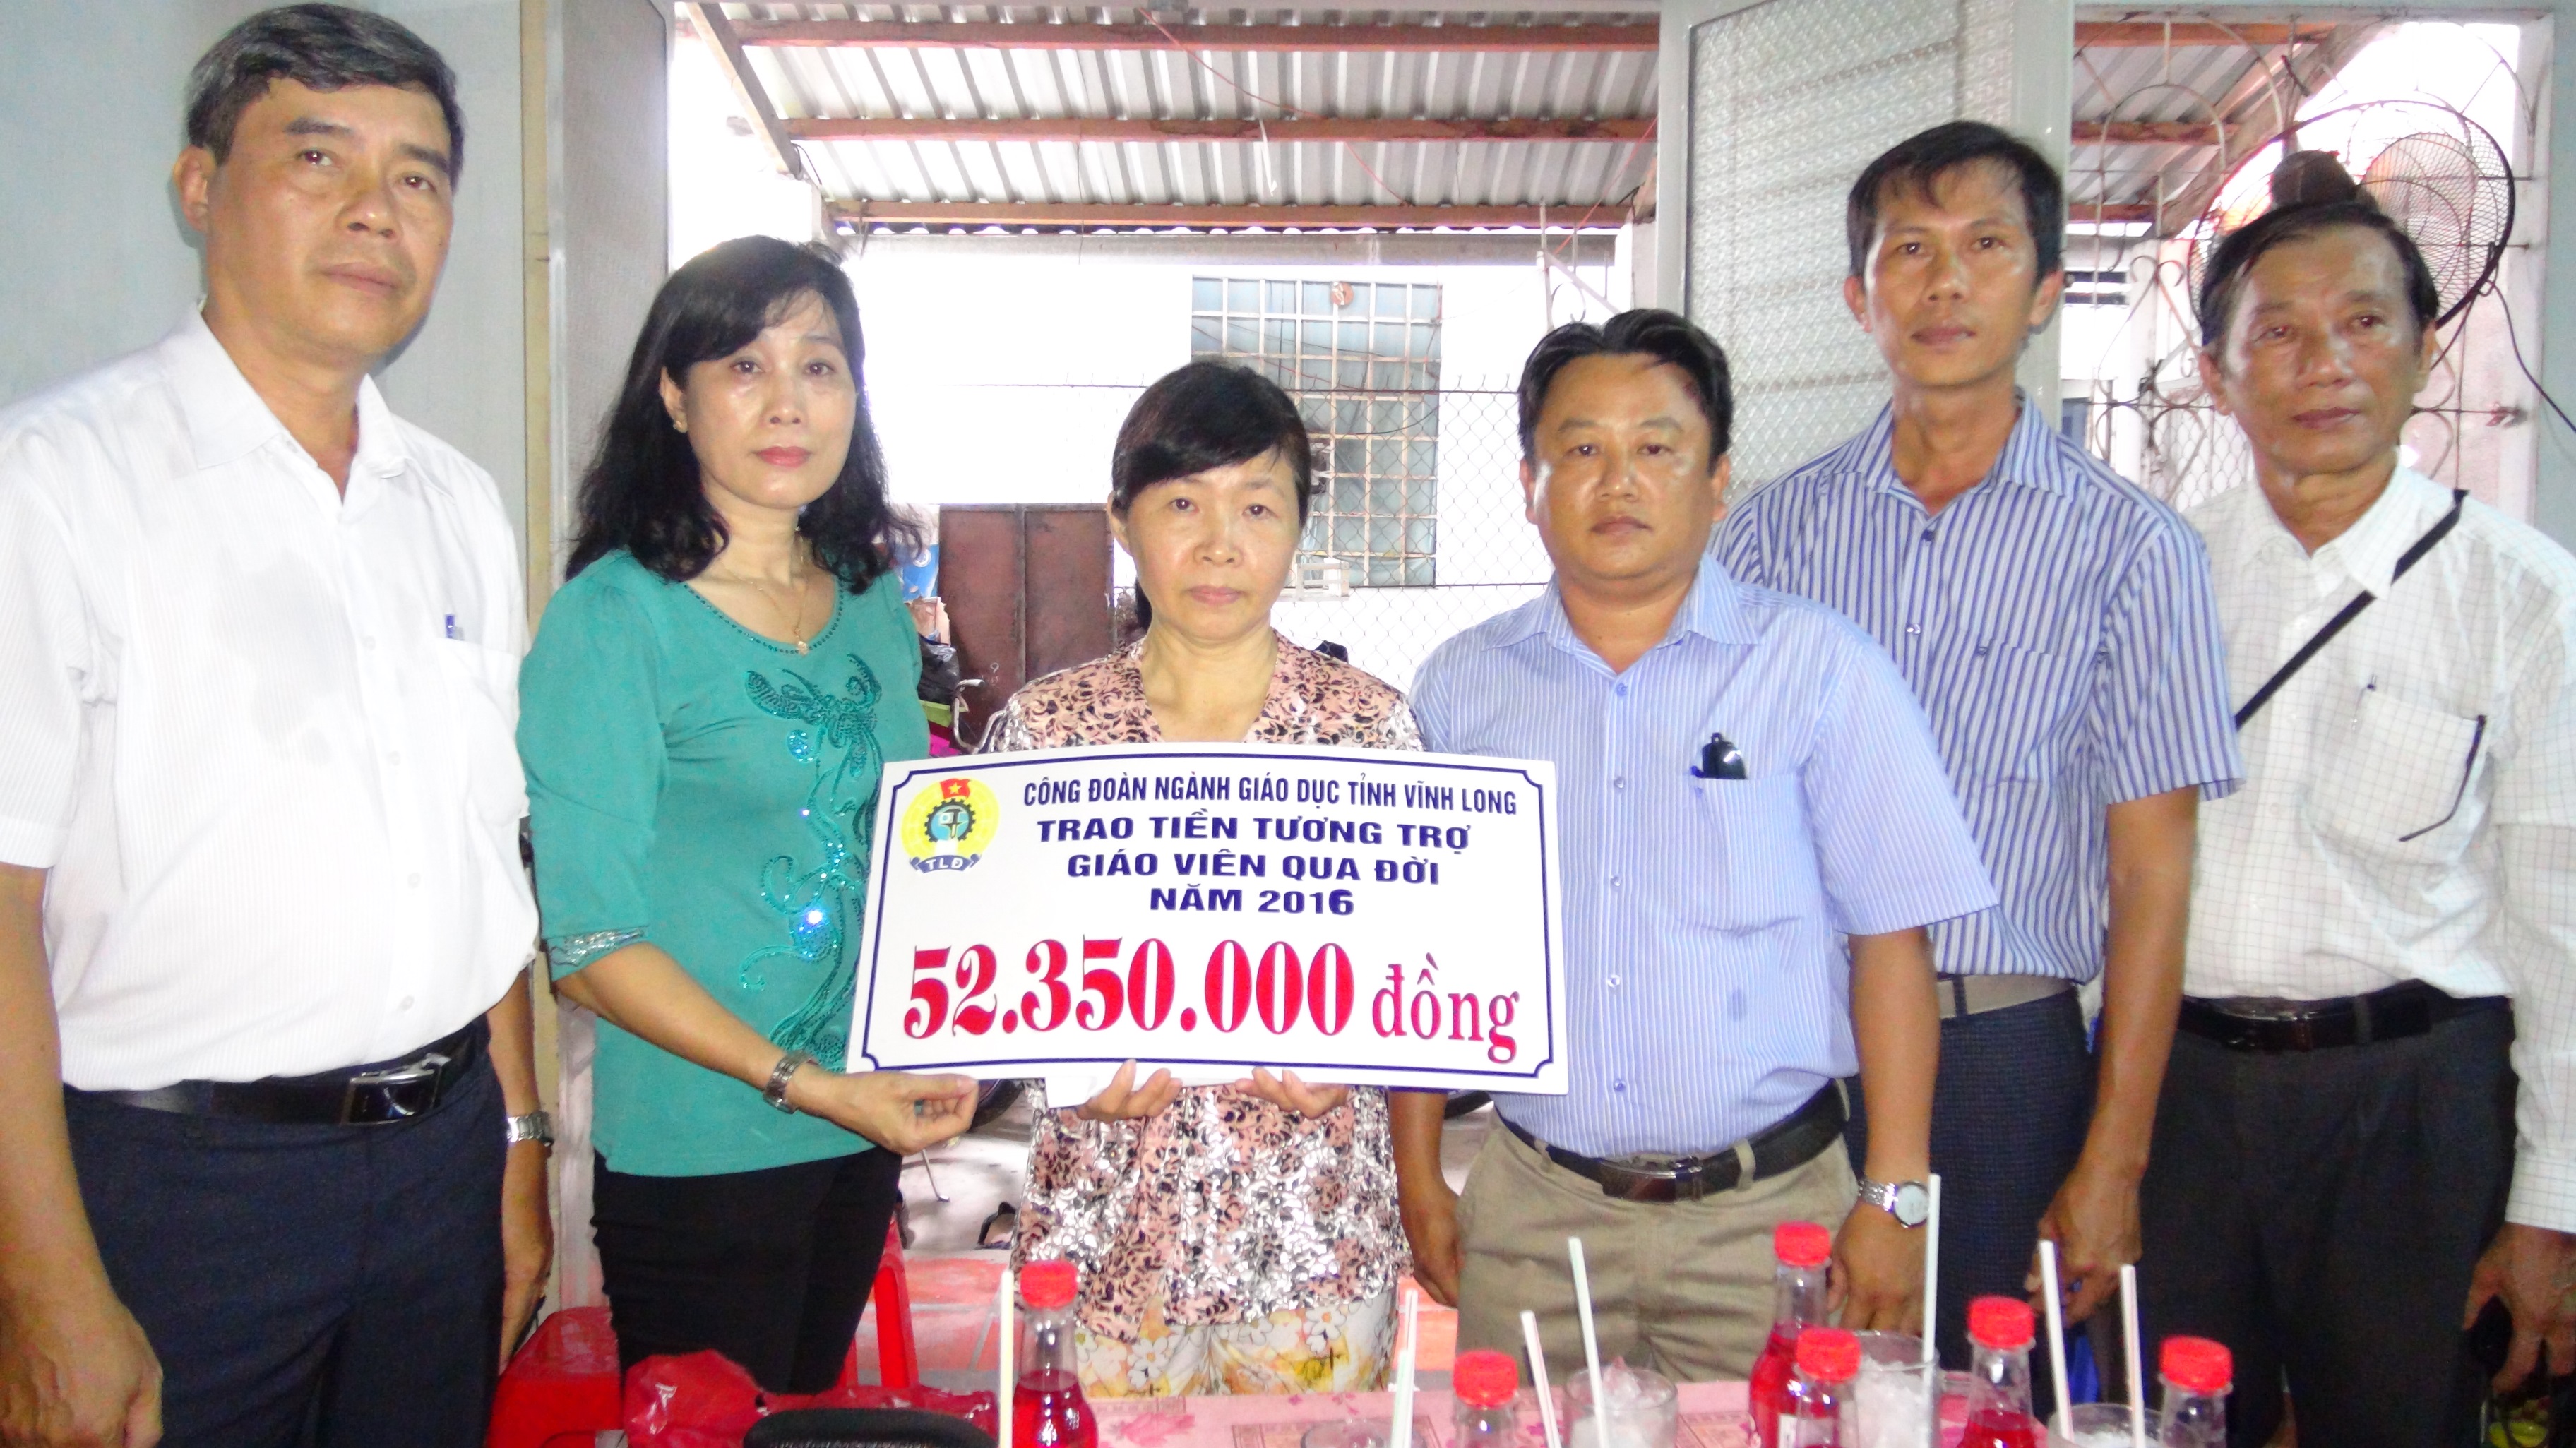 Công đoàn ngành giáo dục tỉnh Vĩnh Long trao tiền hỗ trợ “tương trợ giáo viên qua đời” cho gia đình em gái cố giáo viên Nguyễn Thị Na - Ảnh: M.T.